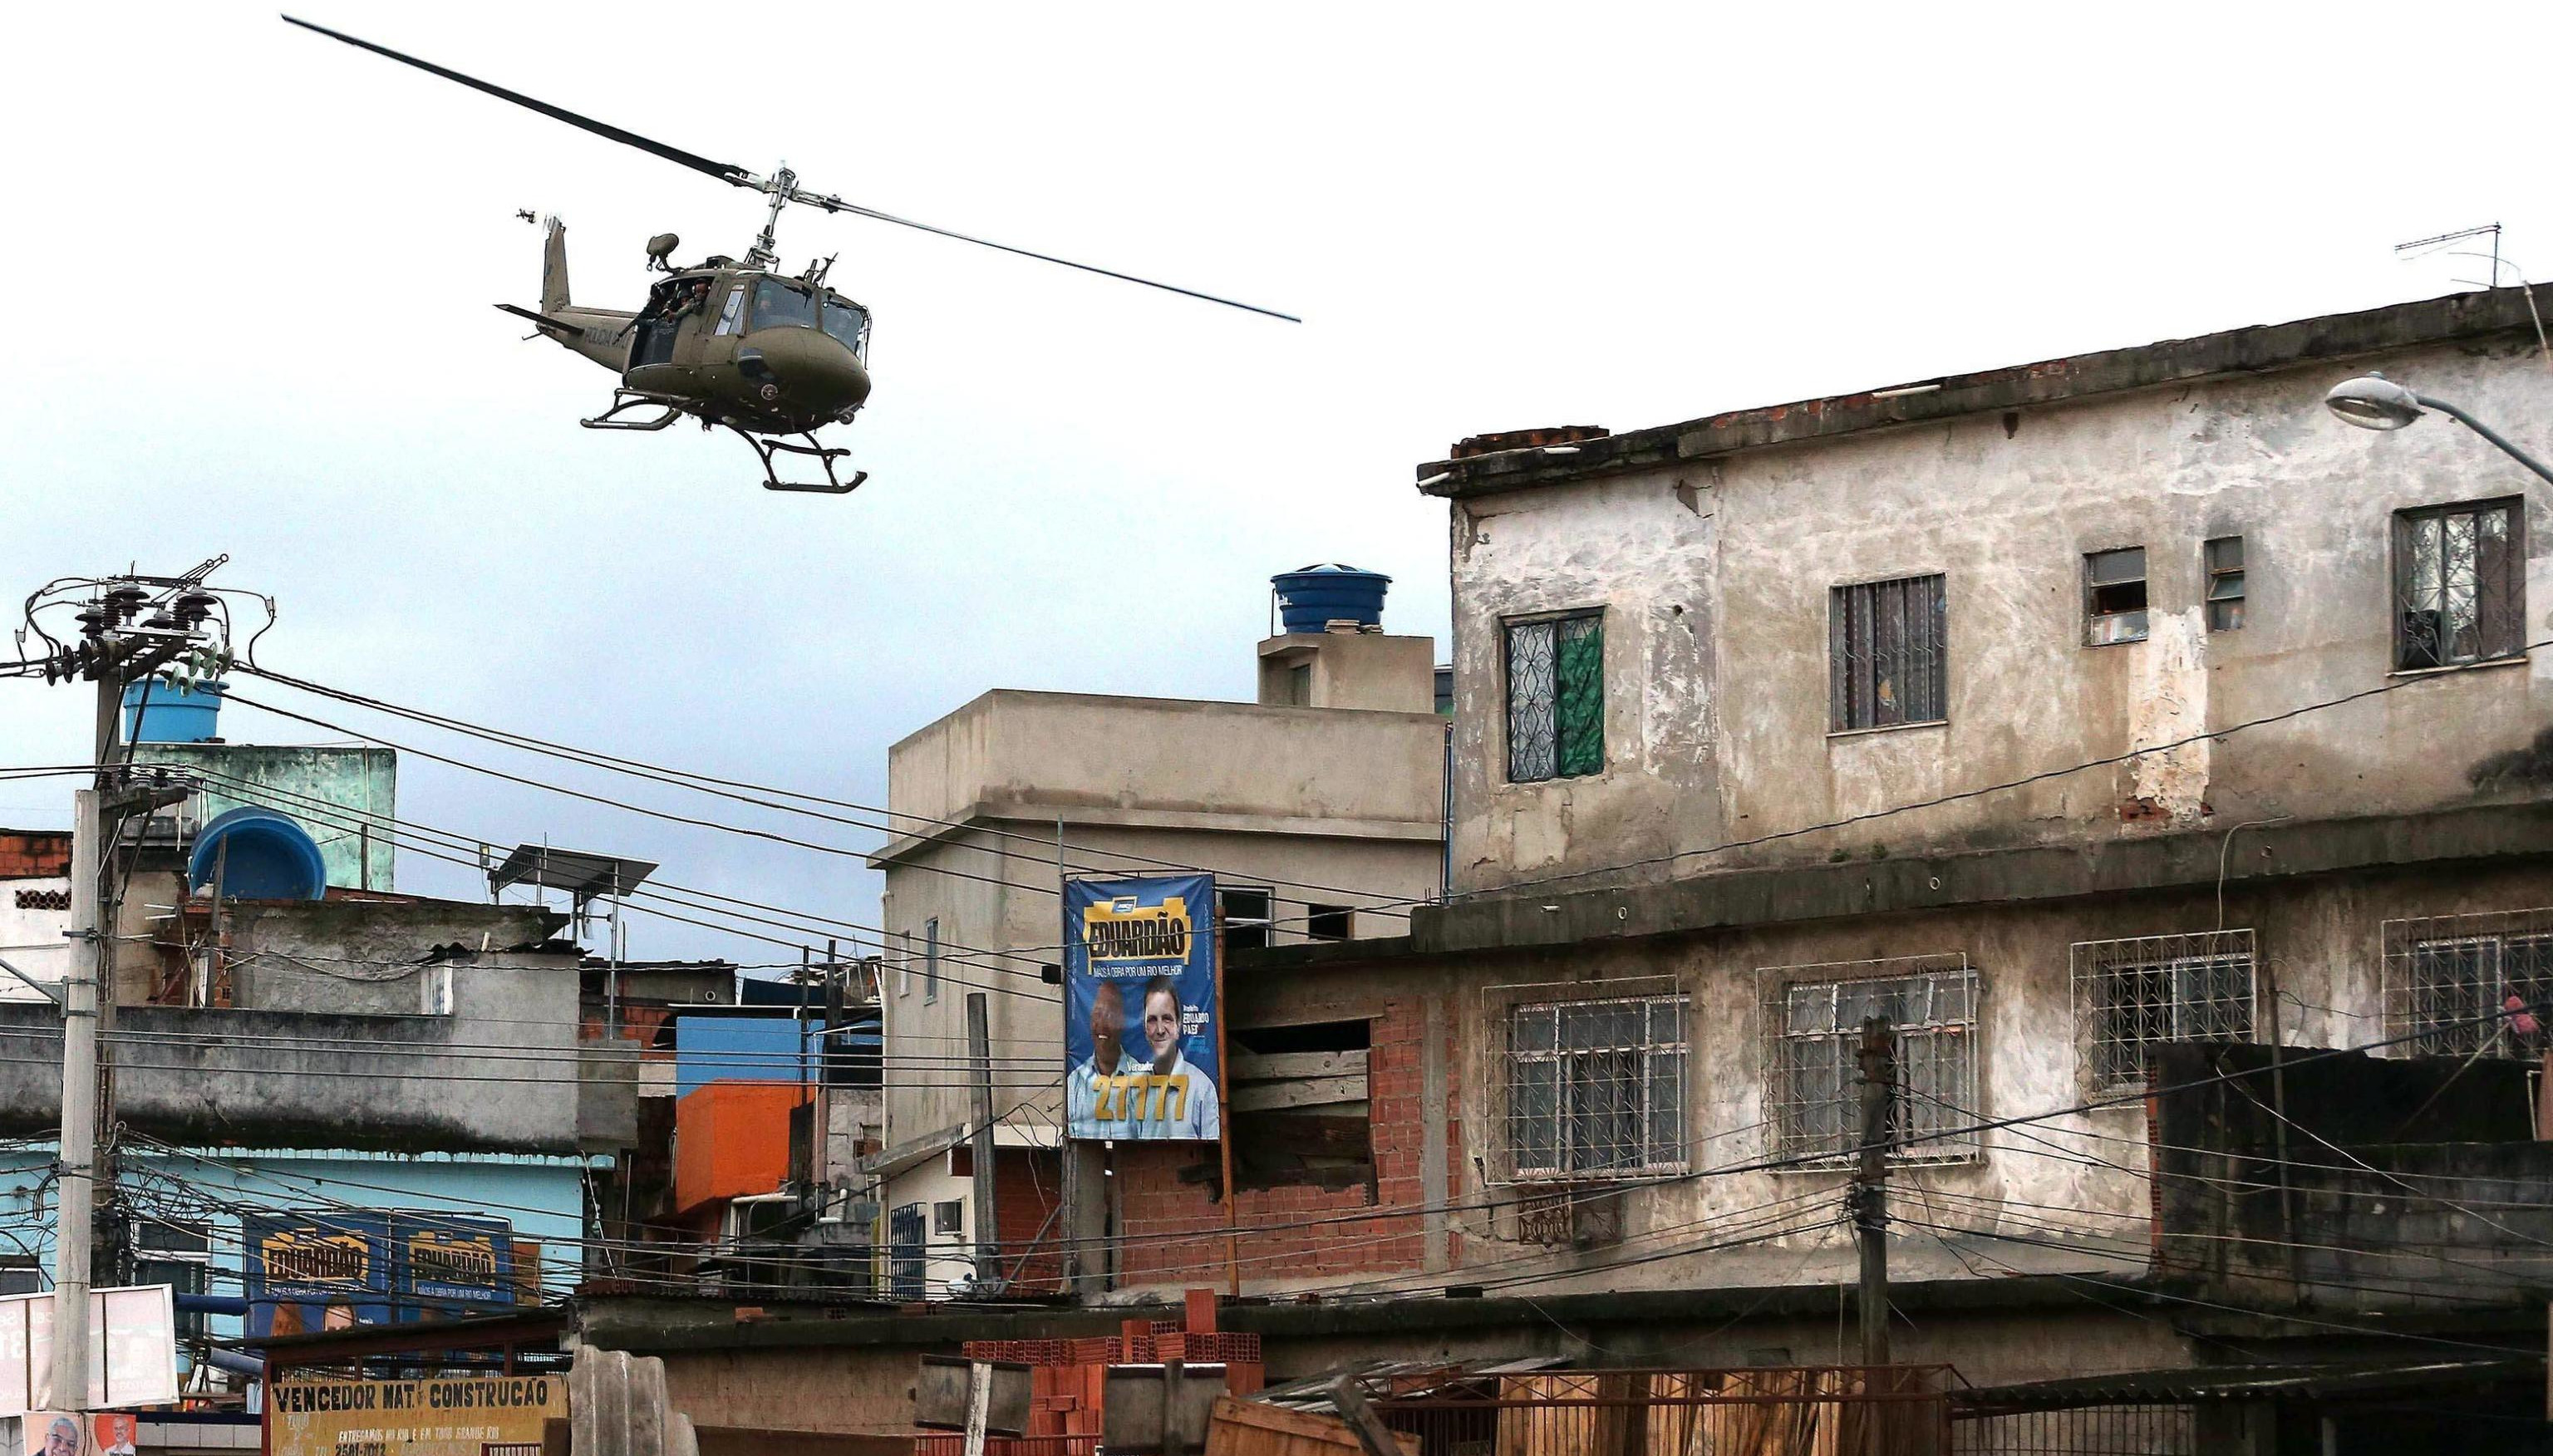 Brasile, nella favela di Rio de Janeiro per errore: due turisti italiani presi a colpi di pistola